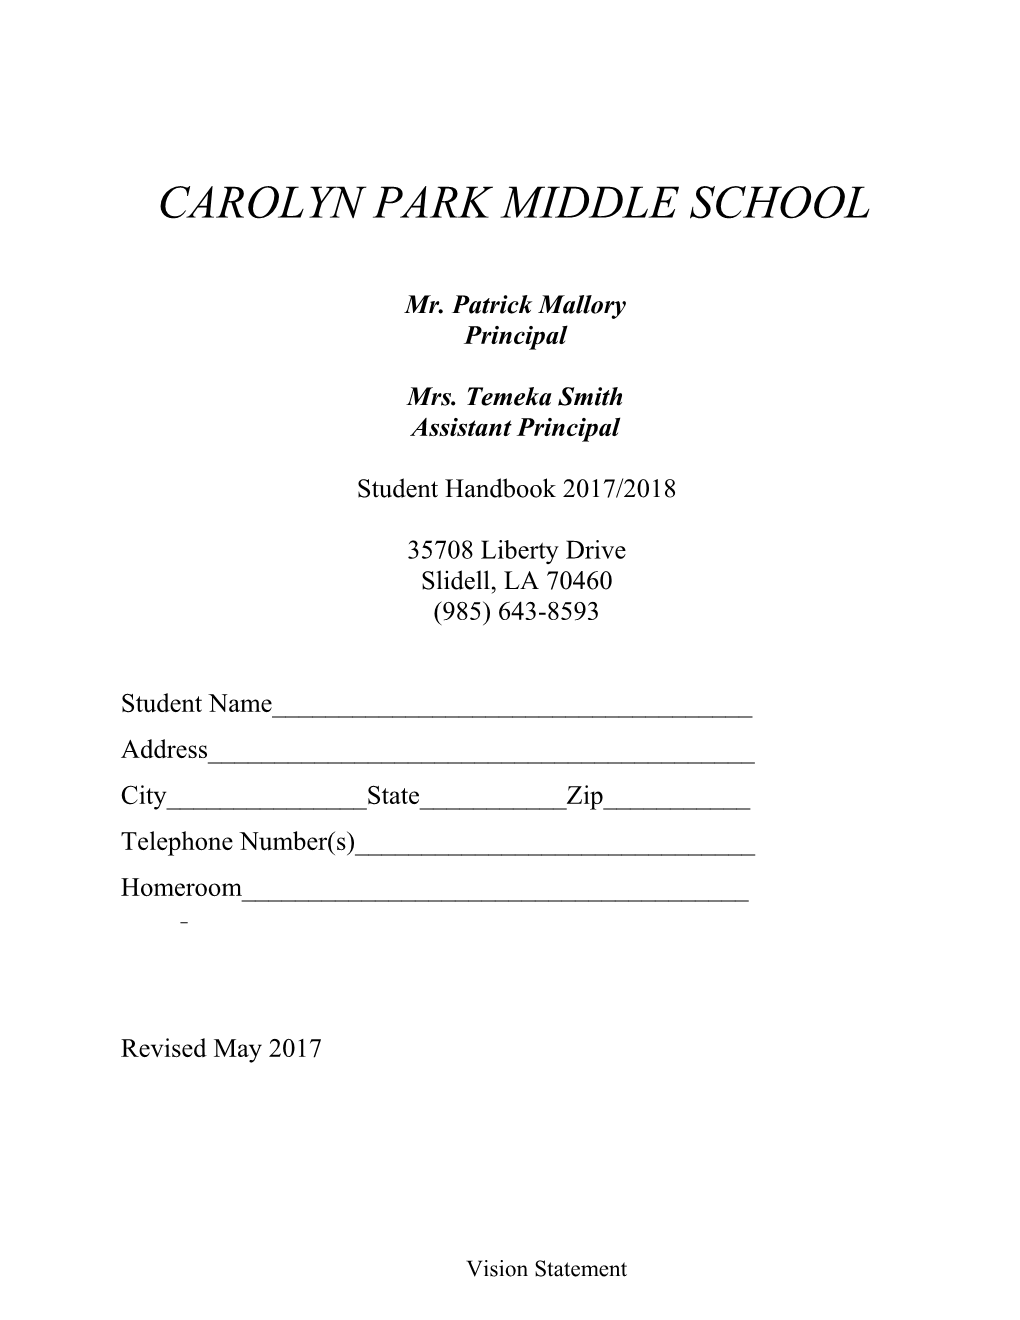 Carolyn Park Middle School